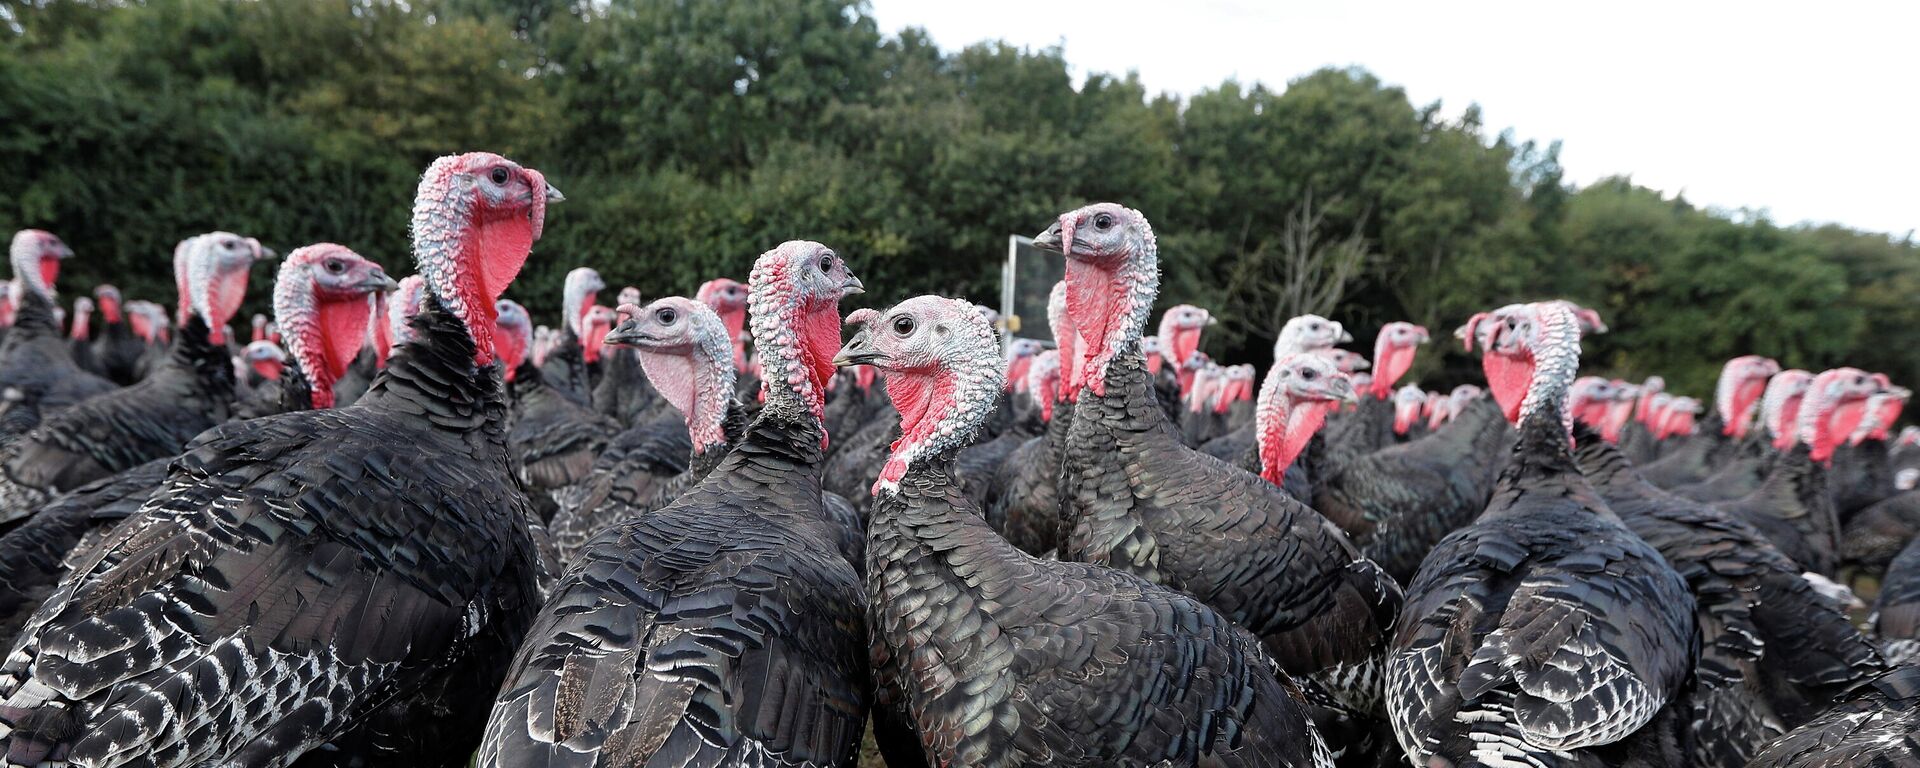 Bronze turkeys are seen at turkey farmer Paul Kelly's farm in Chelmsford - Sputnik International, 1920, 03.10.2021